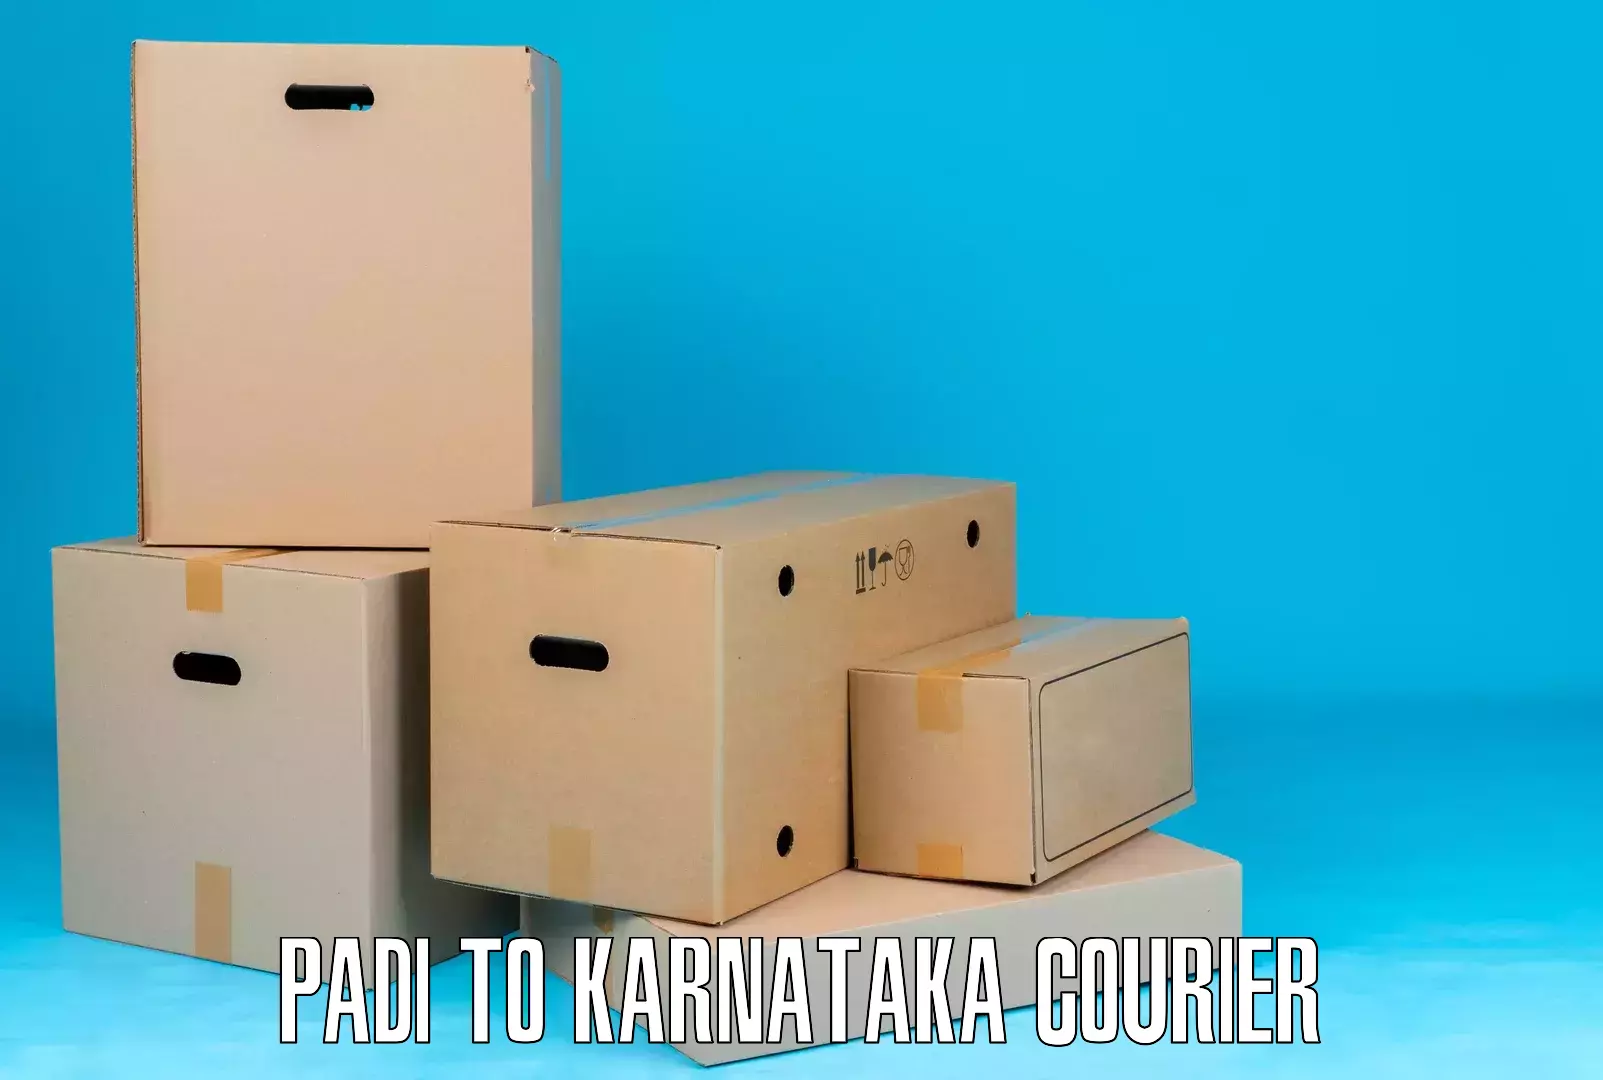 Quality courier partnerships Padi to Yenepoya Mangalore